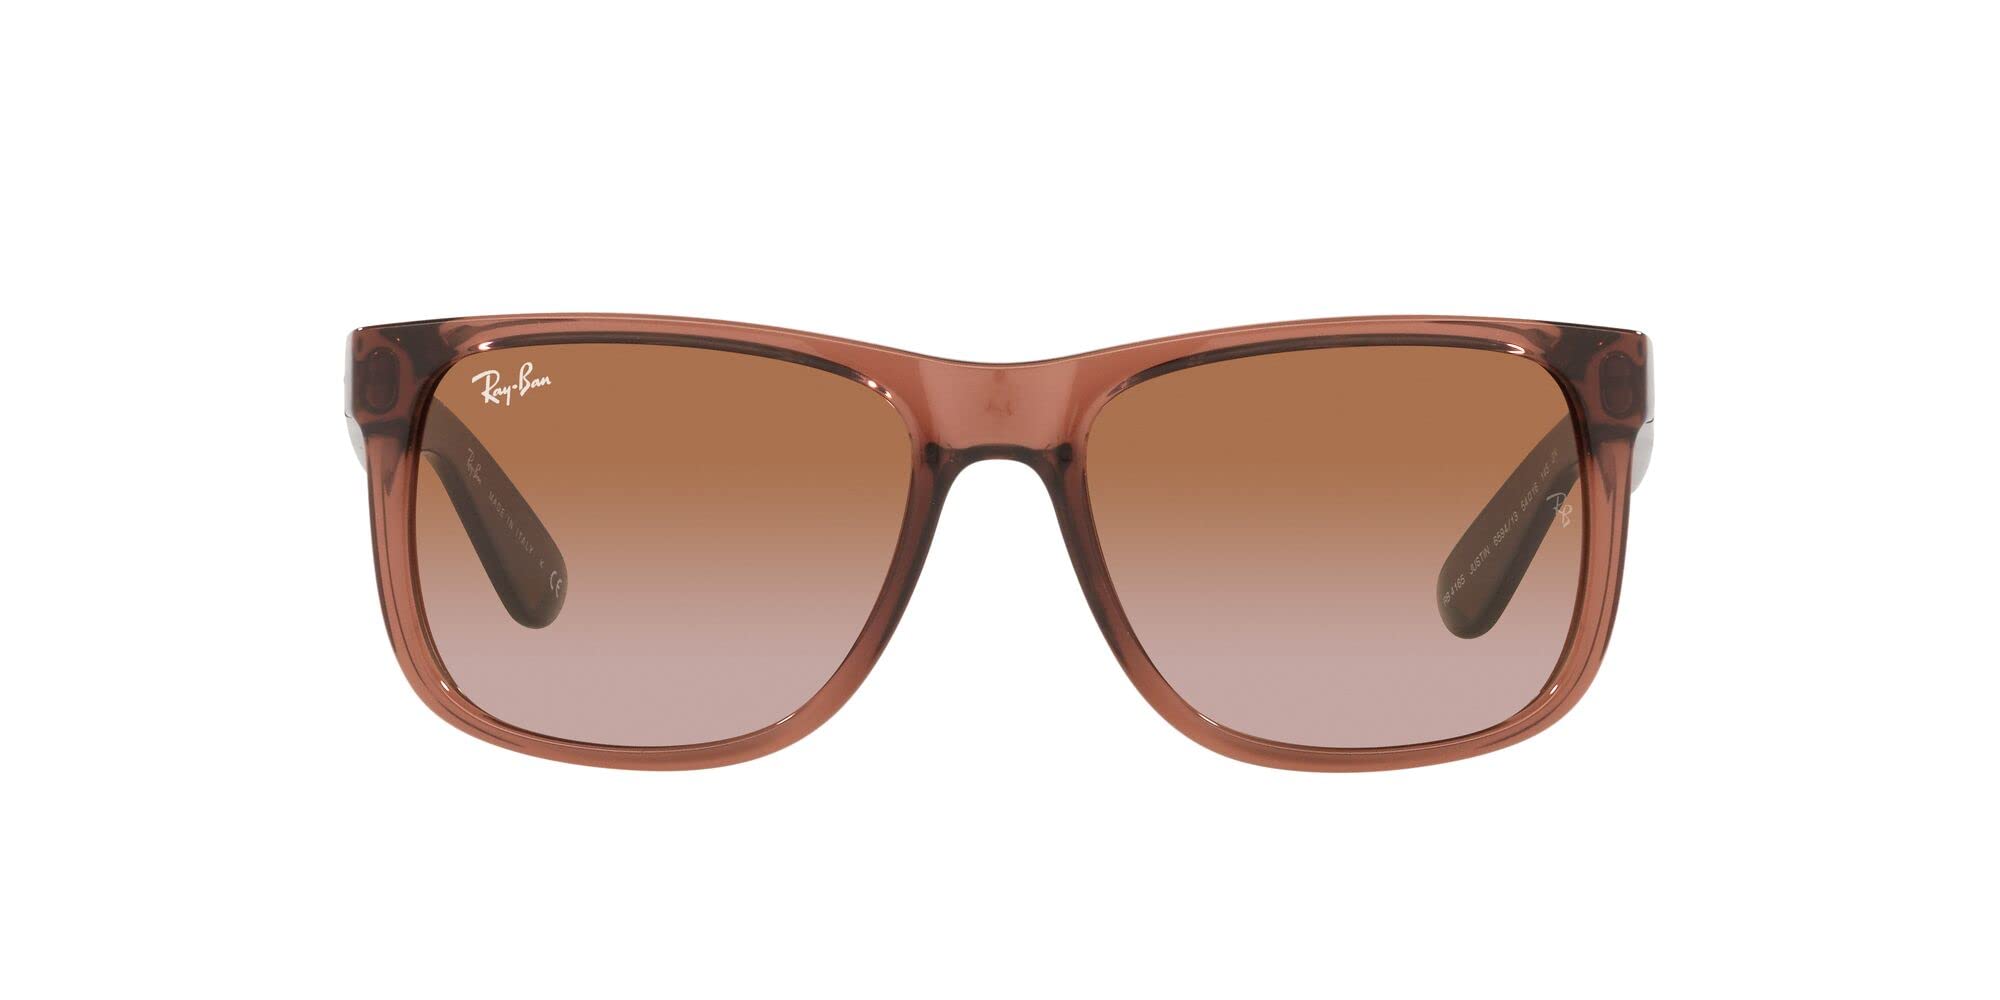 Ray-Ban RB4165 Justin Rectangular Sunglasses, Transparent Light Brown ...